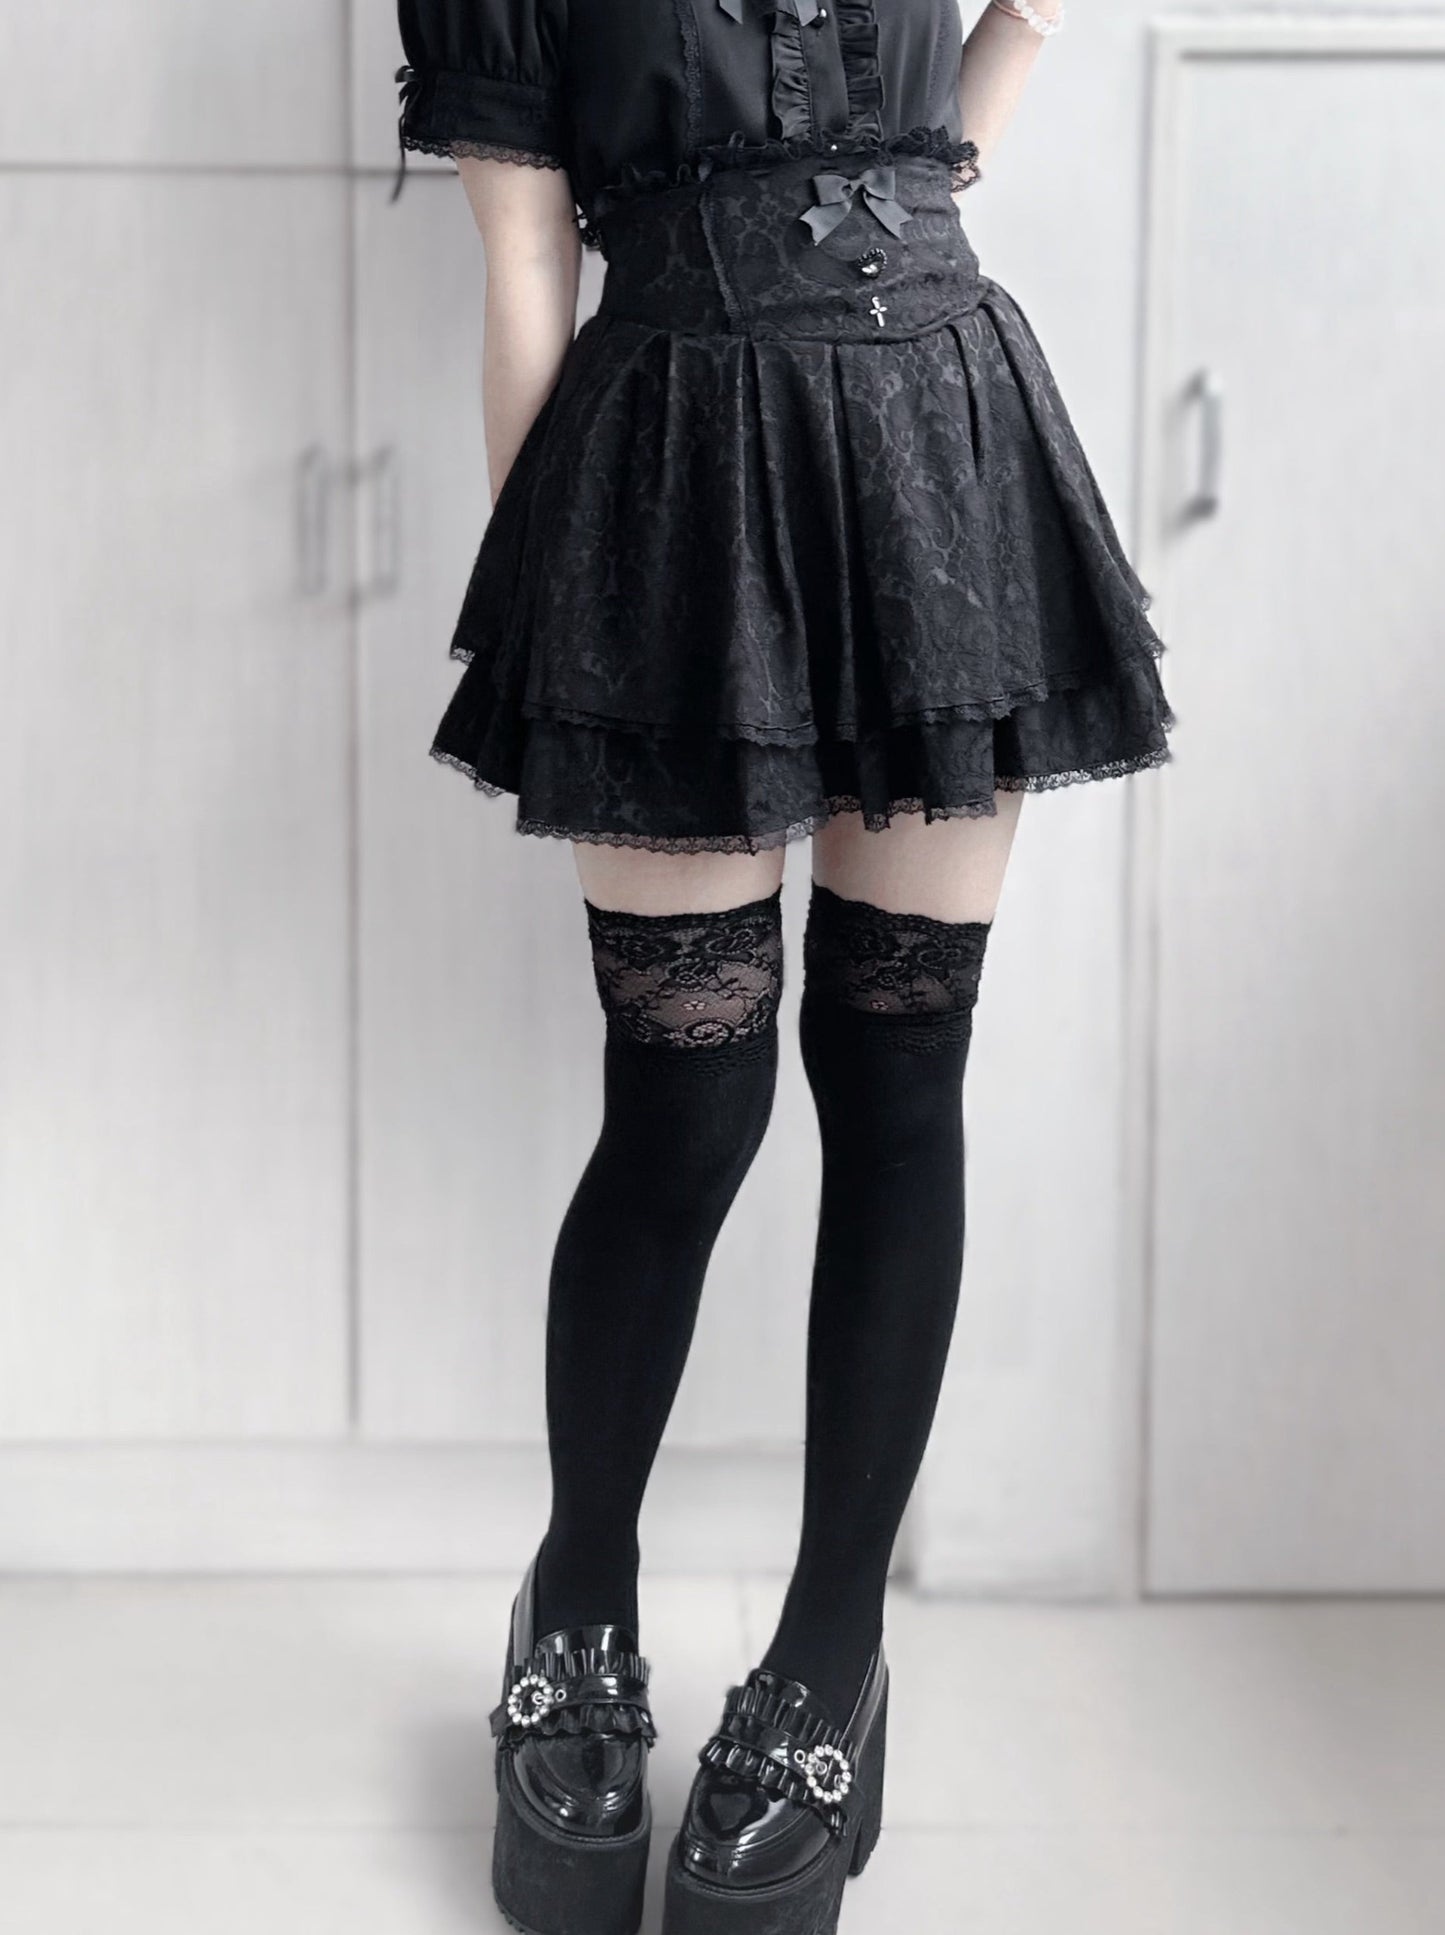 Dark Cape + Flared Skirt